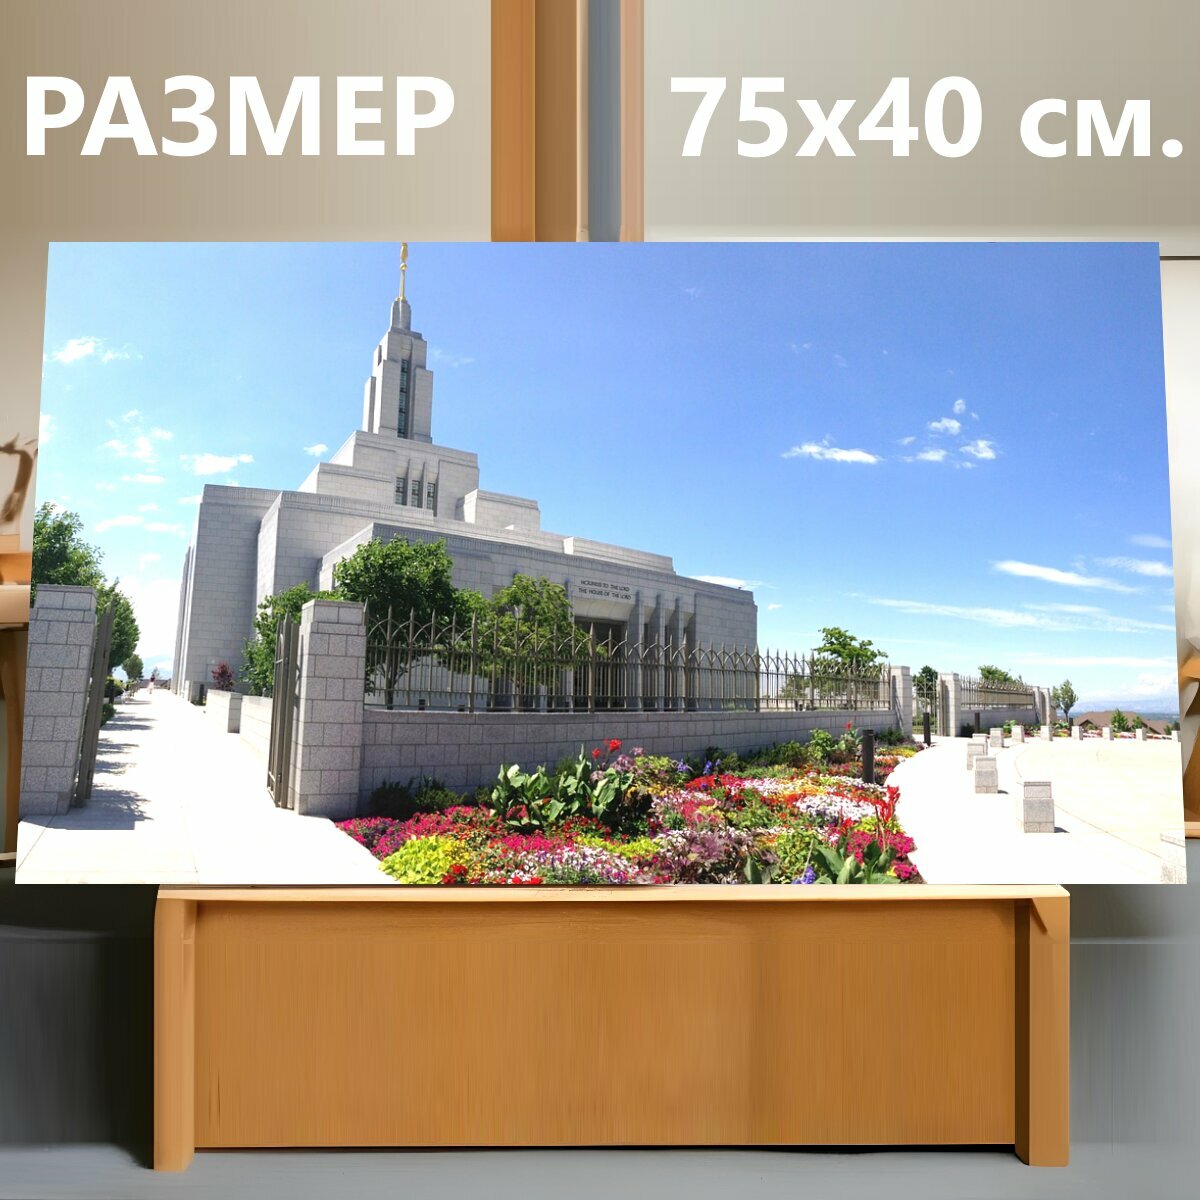 Картина на холсте "Храм, церковь, религиозный" на подрамнике 75х40 см. для интерьера